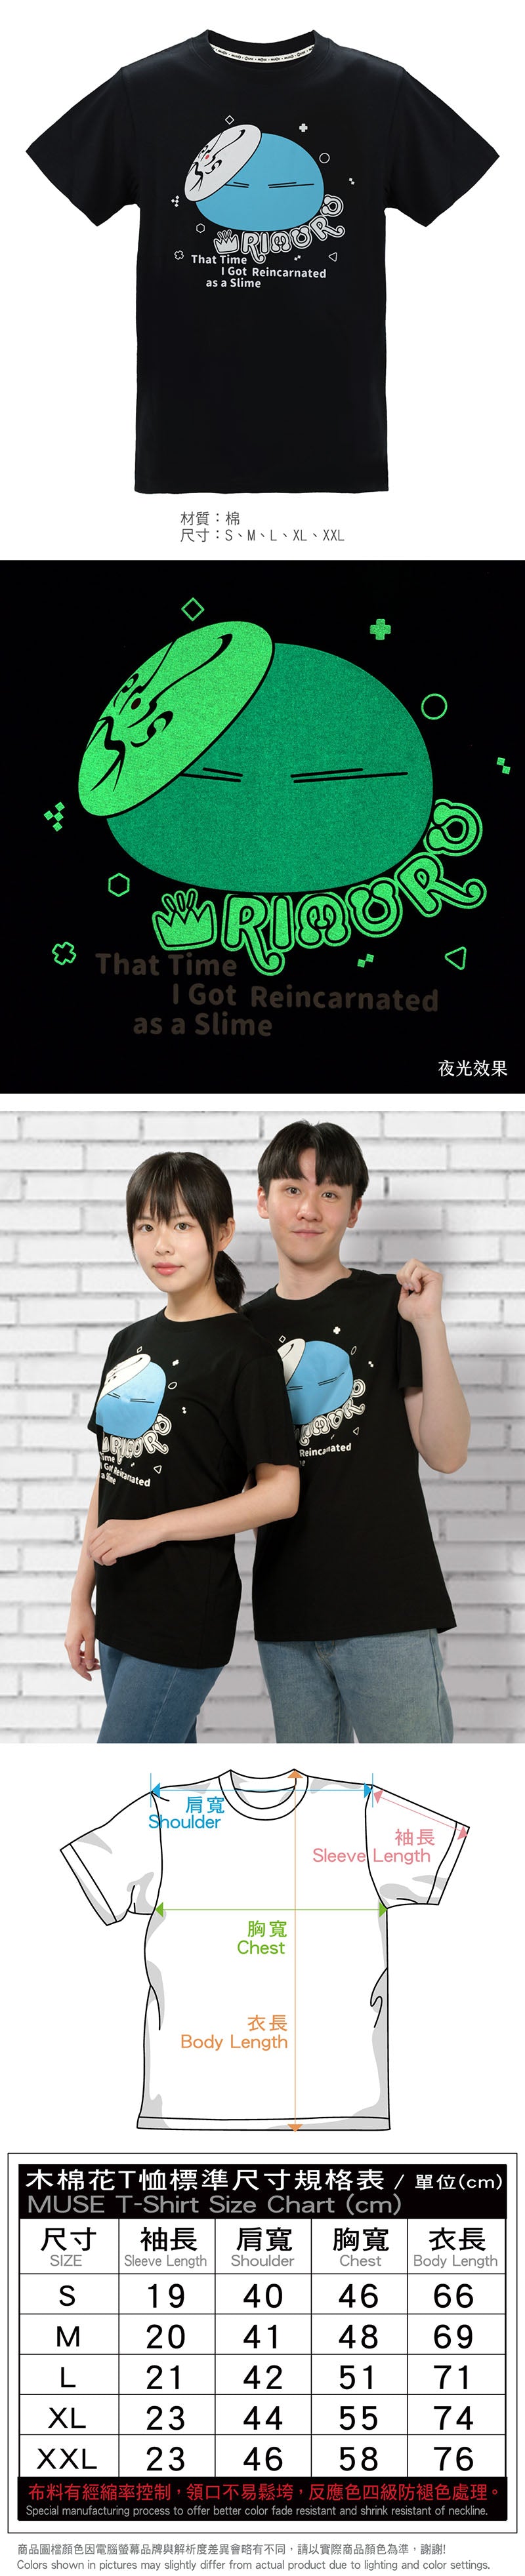 轉生史萊姆 潮流夜光 T-shirt 史萊姆 服裝 Microworks Online Store